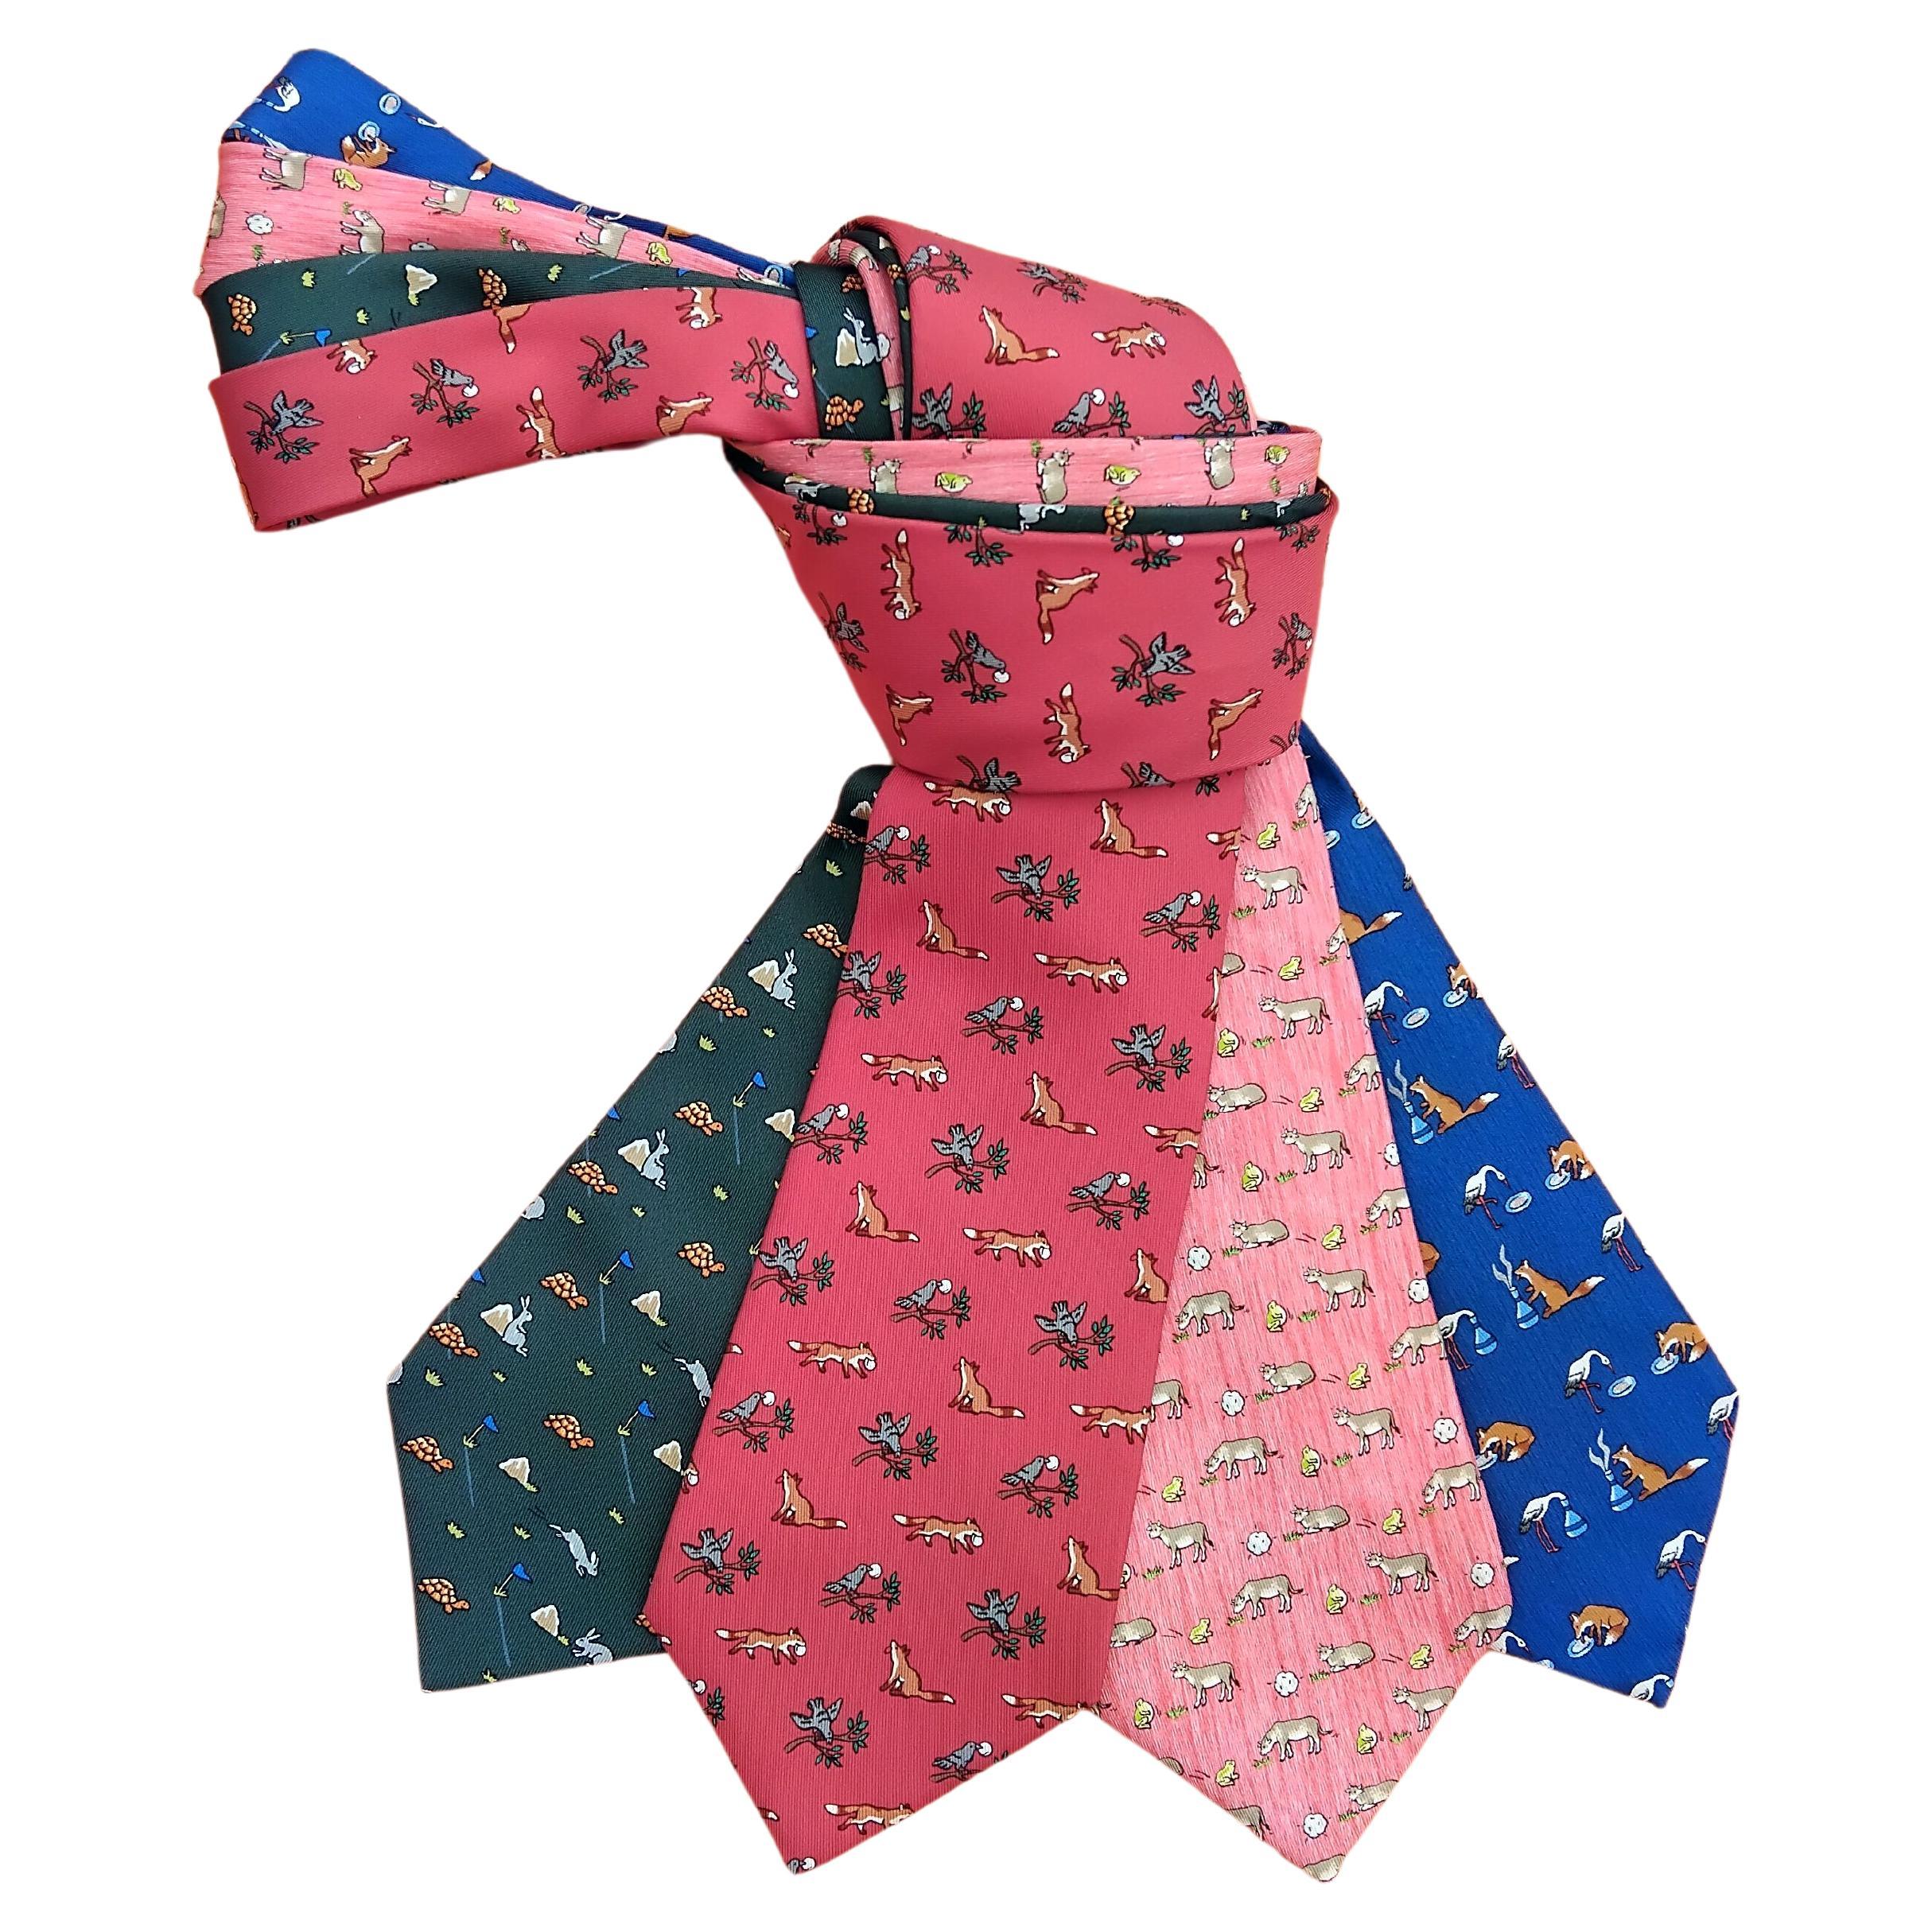 Exceptionnel ensemble de 4 cravates Hermès tirées des Fables de La Fontaine en soie en vente